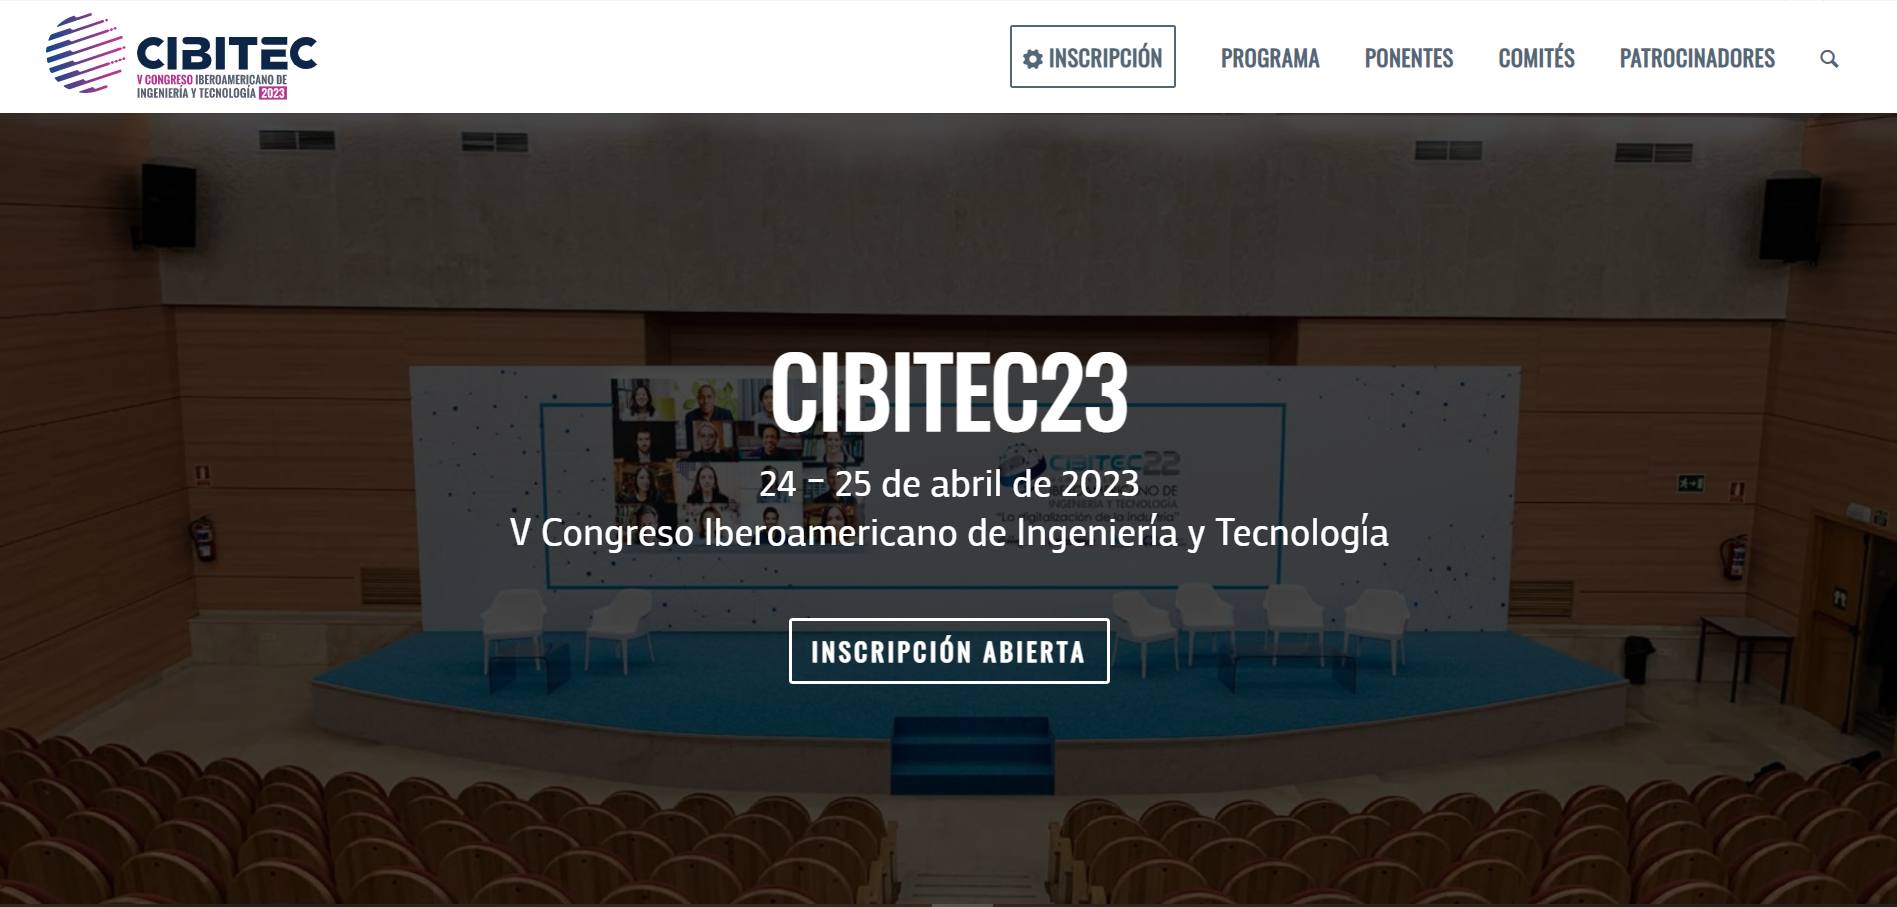 V Congreso Iberoamericano de Ingeniería y Tecnología